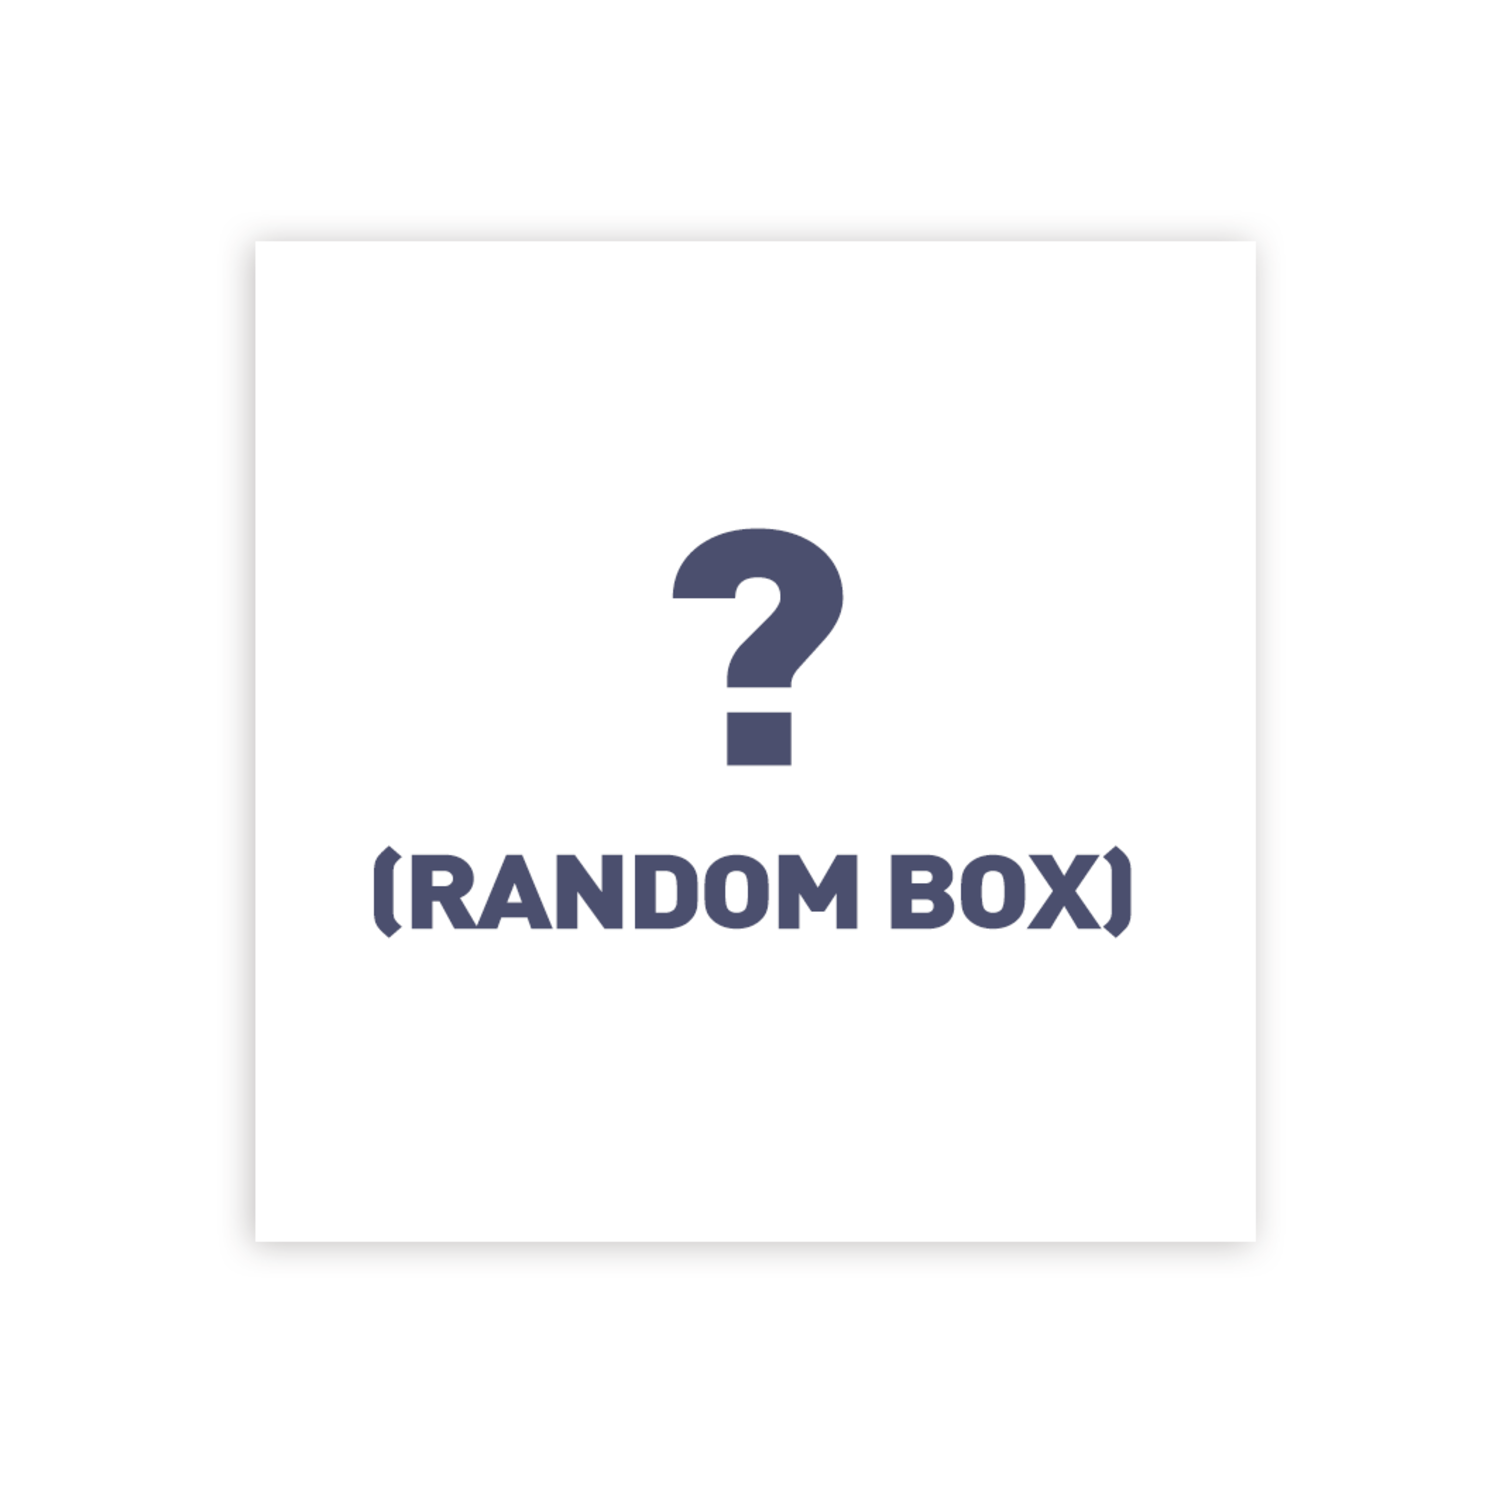 아스트로(ASTRO) - PHOTO EXHIBITION OFFICIAL GOODS / 랜덤박스 (RANDOM BOX)